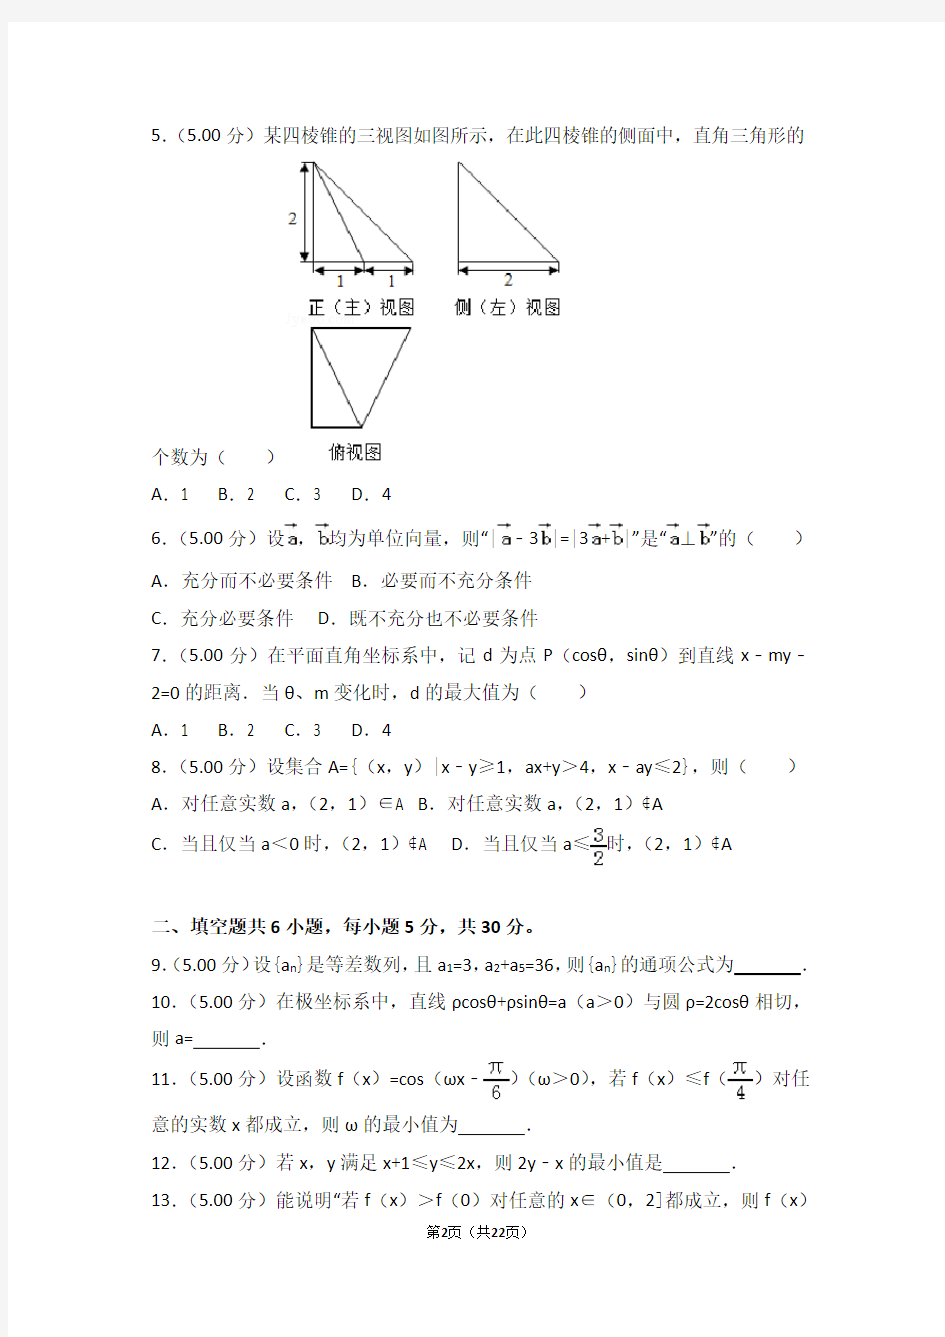 高考试卷-2018年北京市高考数学试卷理科